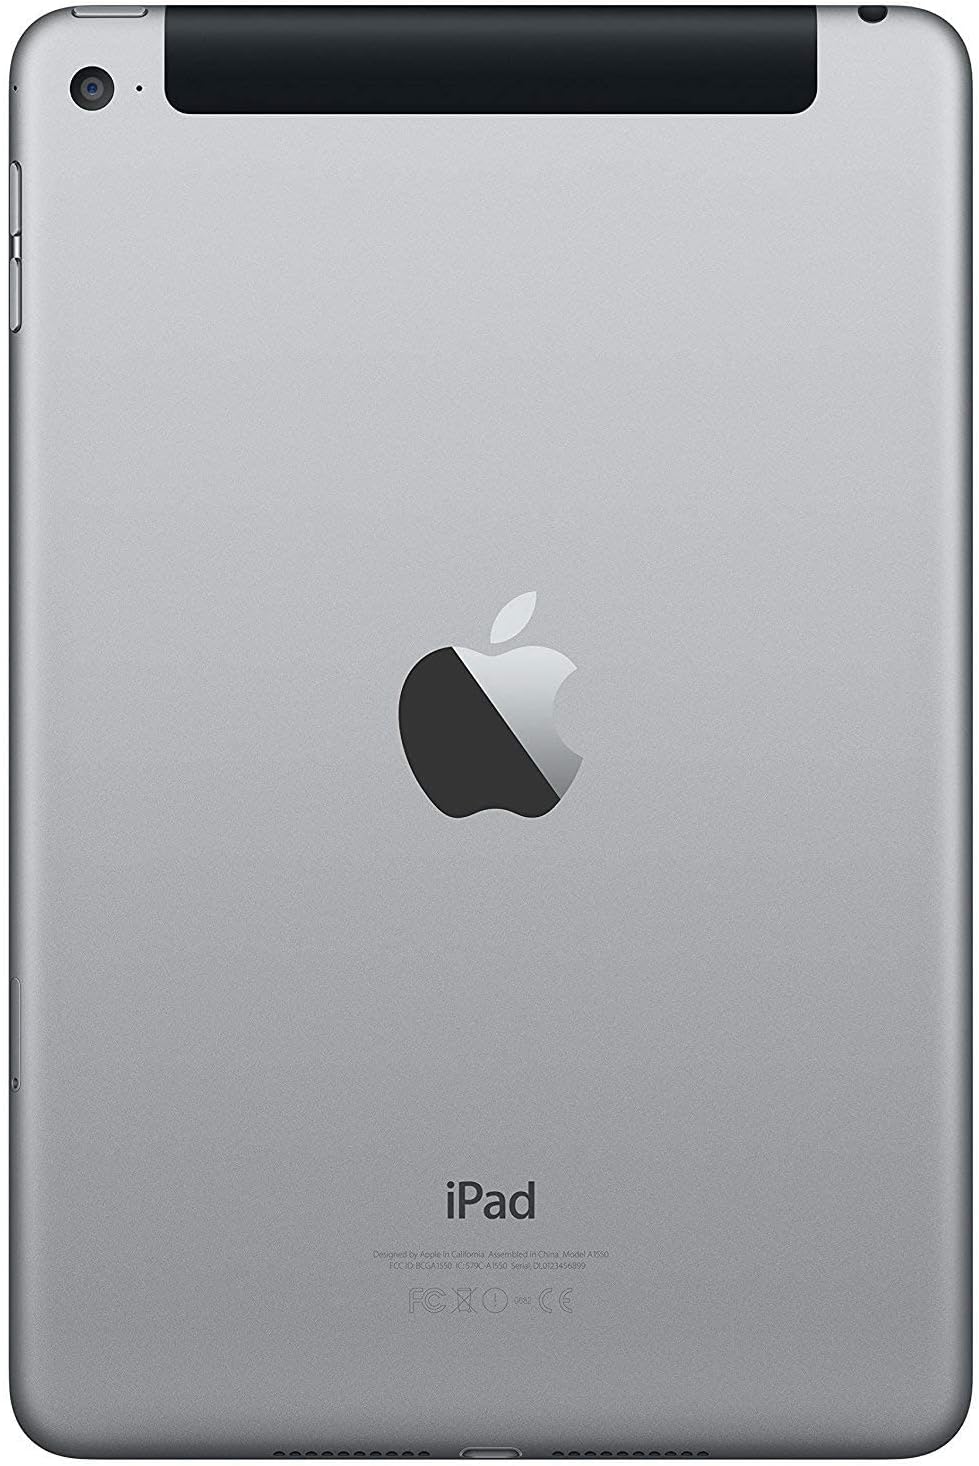 Apple iPad Mini 4, 128GB, Space Gray - WiFi + Cellular (Renewed)